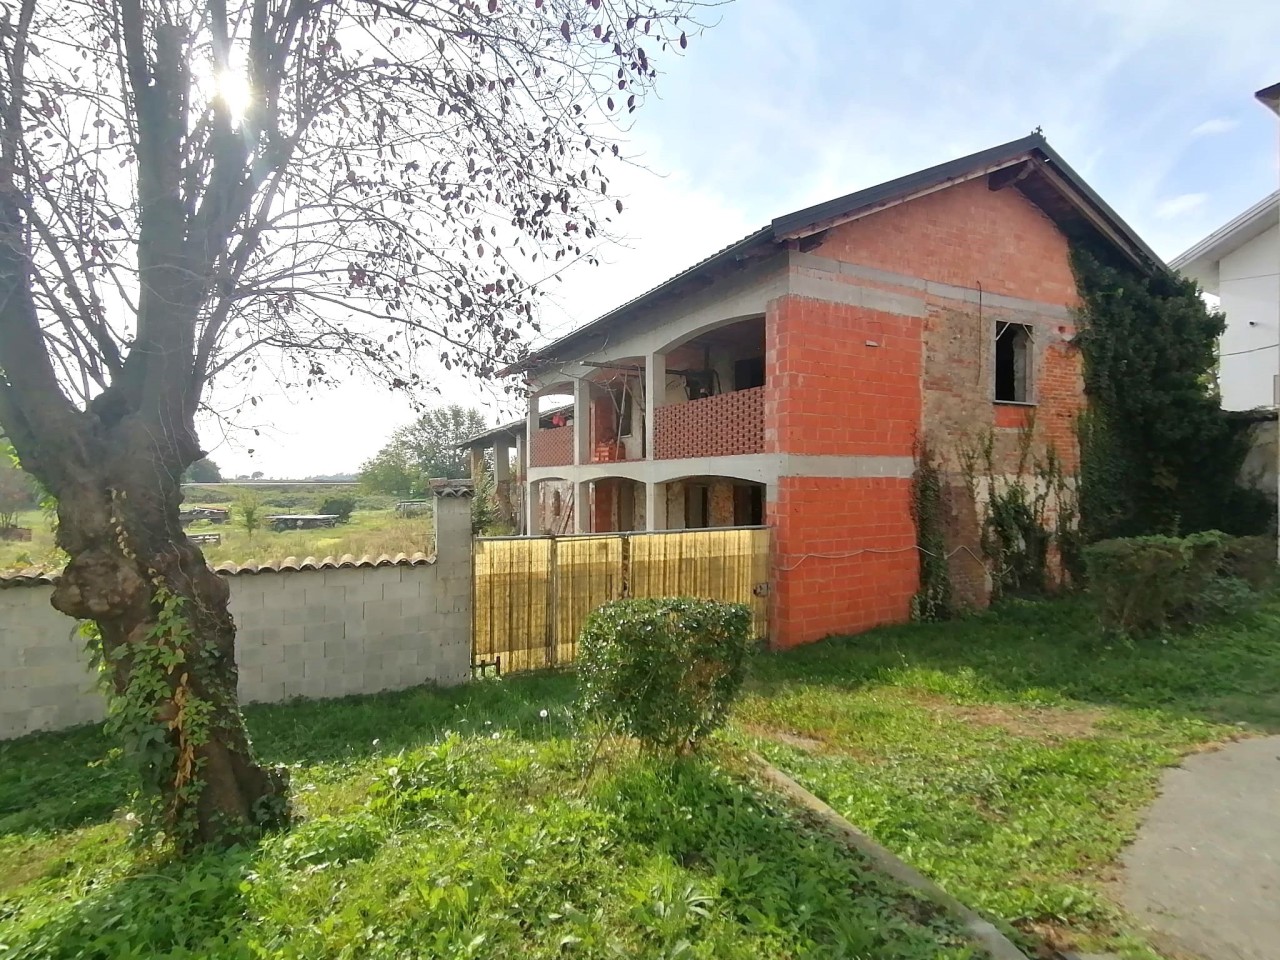 Villa in vendita a Formigliana, 7 locali, prezzo € 42.000 | PortaleAgenzieImmobiliari.it